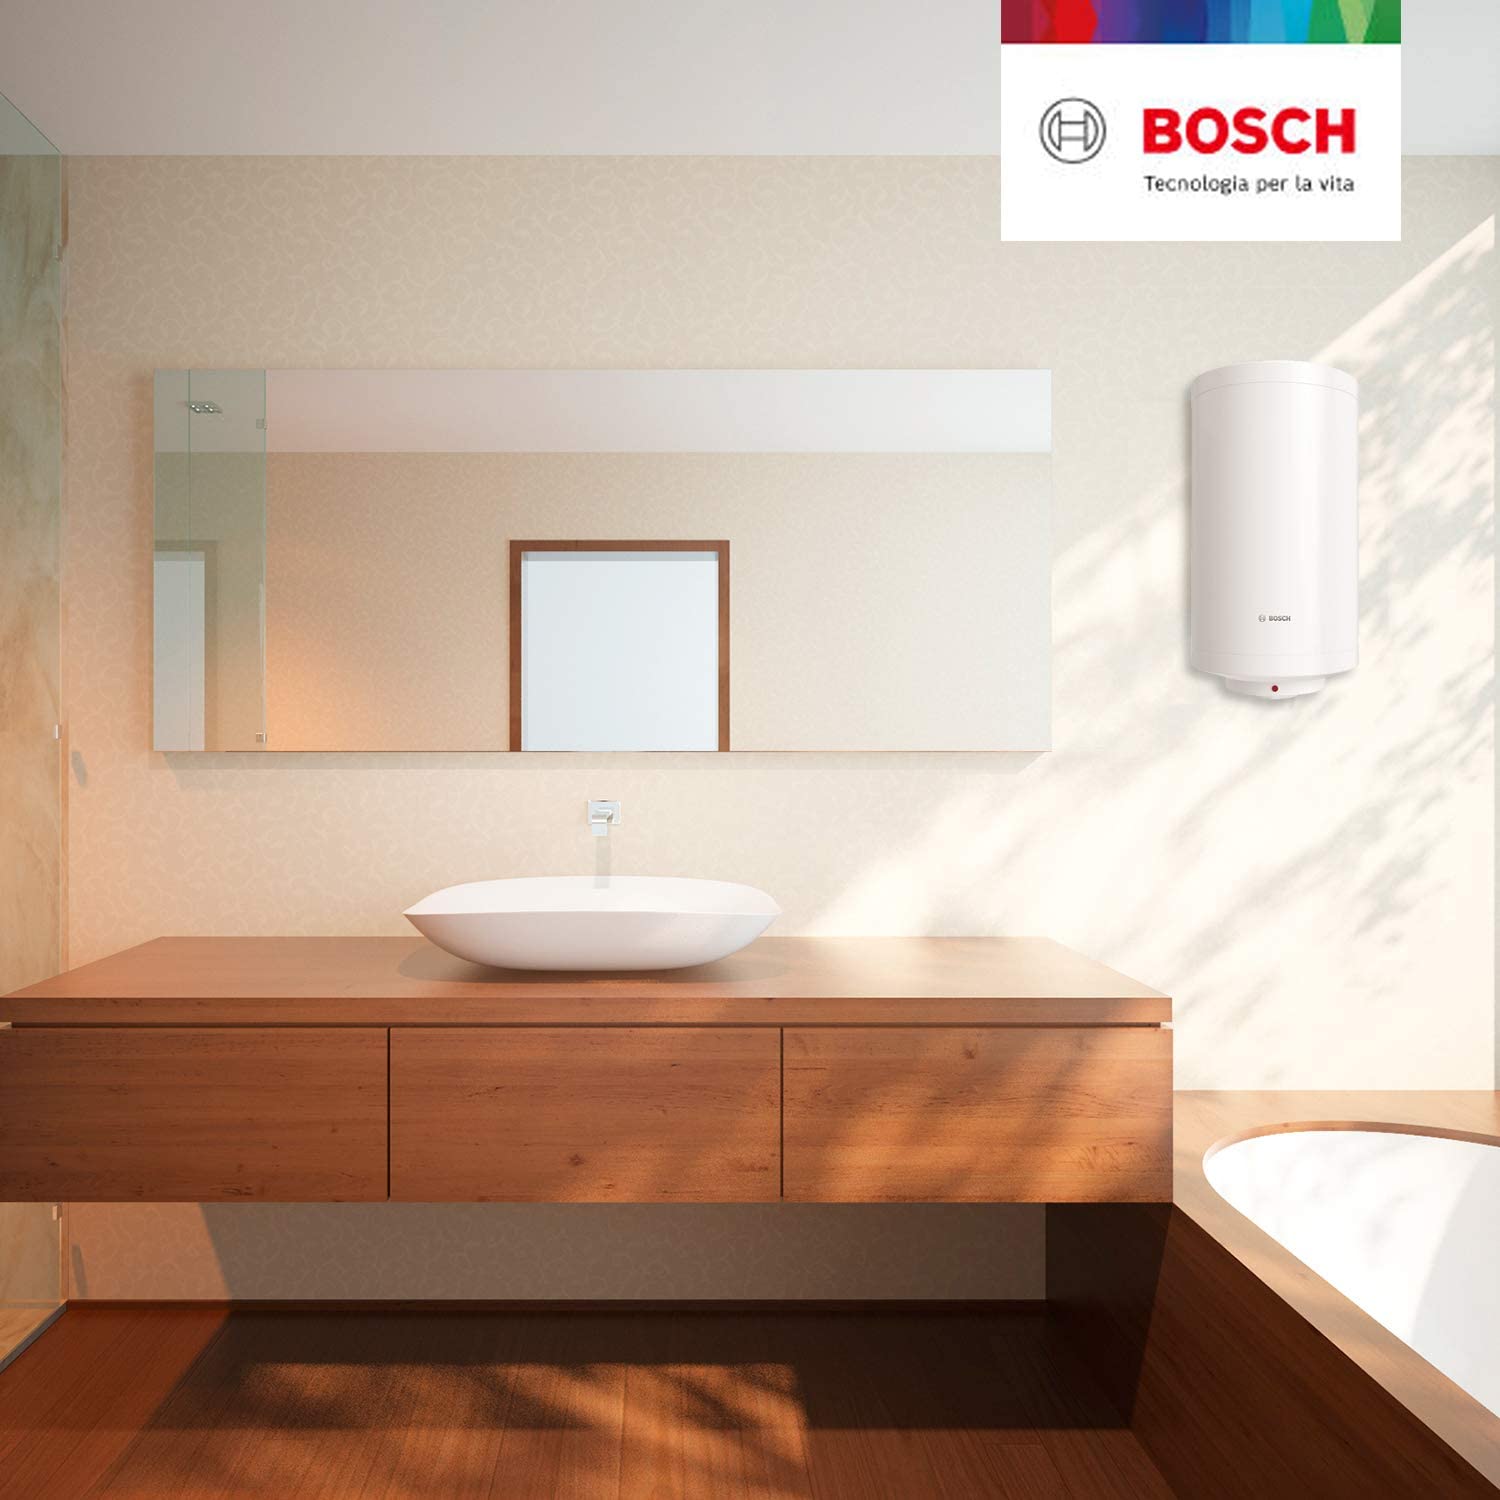 Termo Eléctrico Bosch vertical 50L hogar electrodoméstico Tien21 climatización